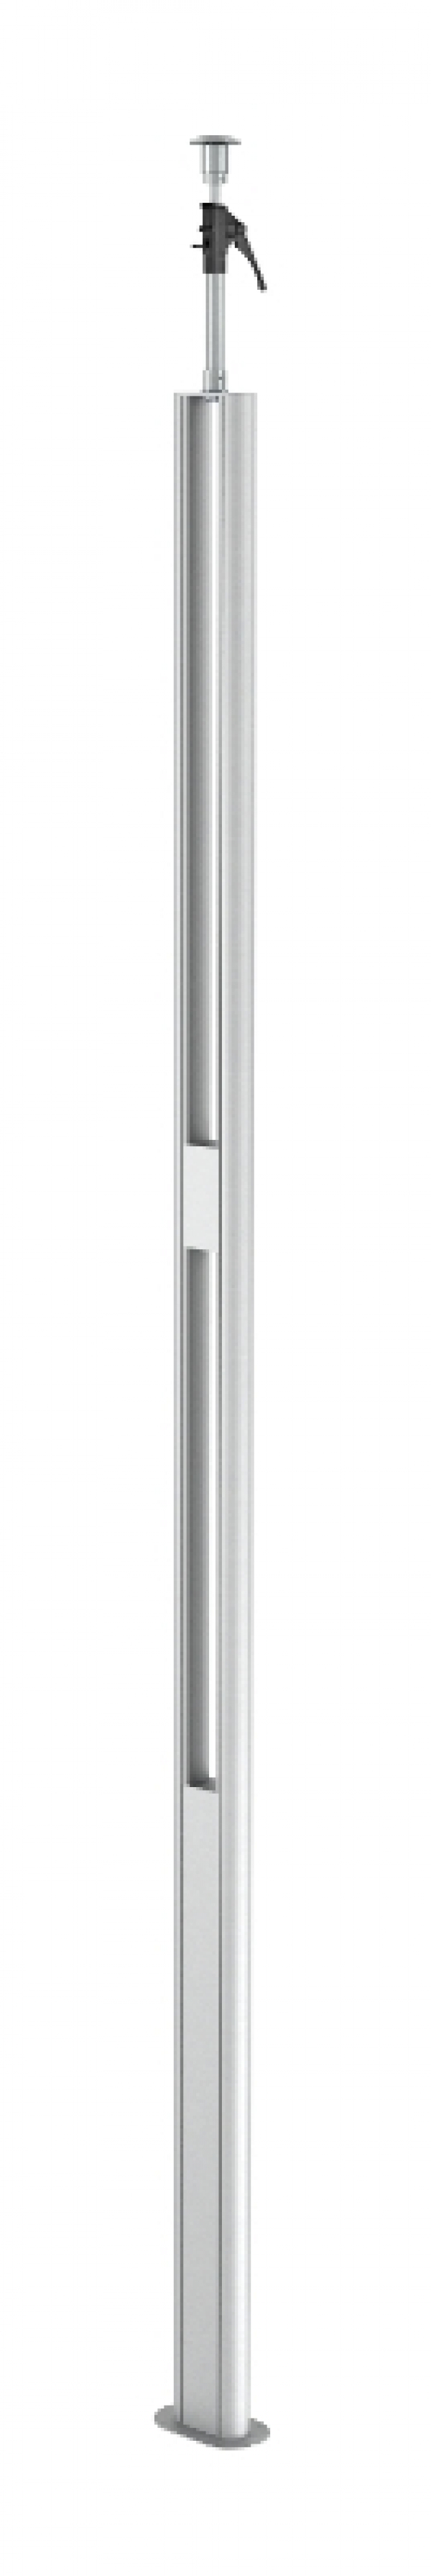 6290010 - OBO BETTERMANN Электромонтажная колонна 3,3-3,5 м 1-сторонняя 64x145x3000 мм (алюминий,белый) (ISST70140BRW).